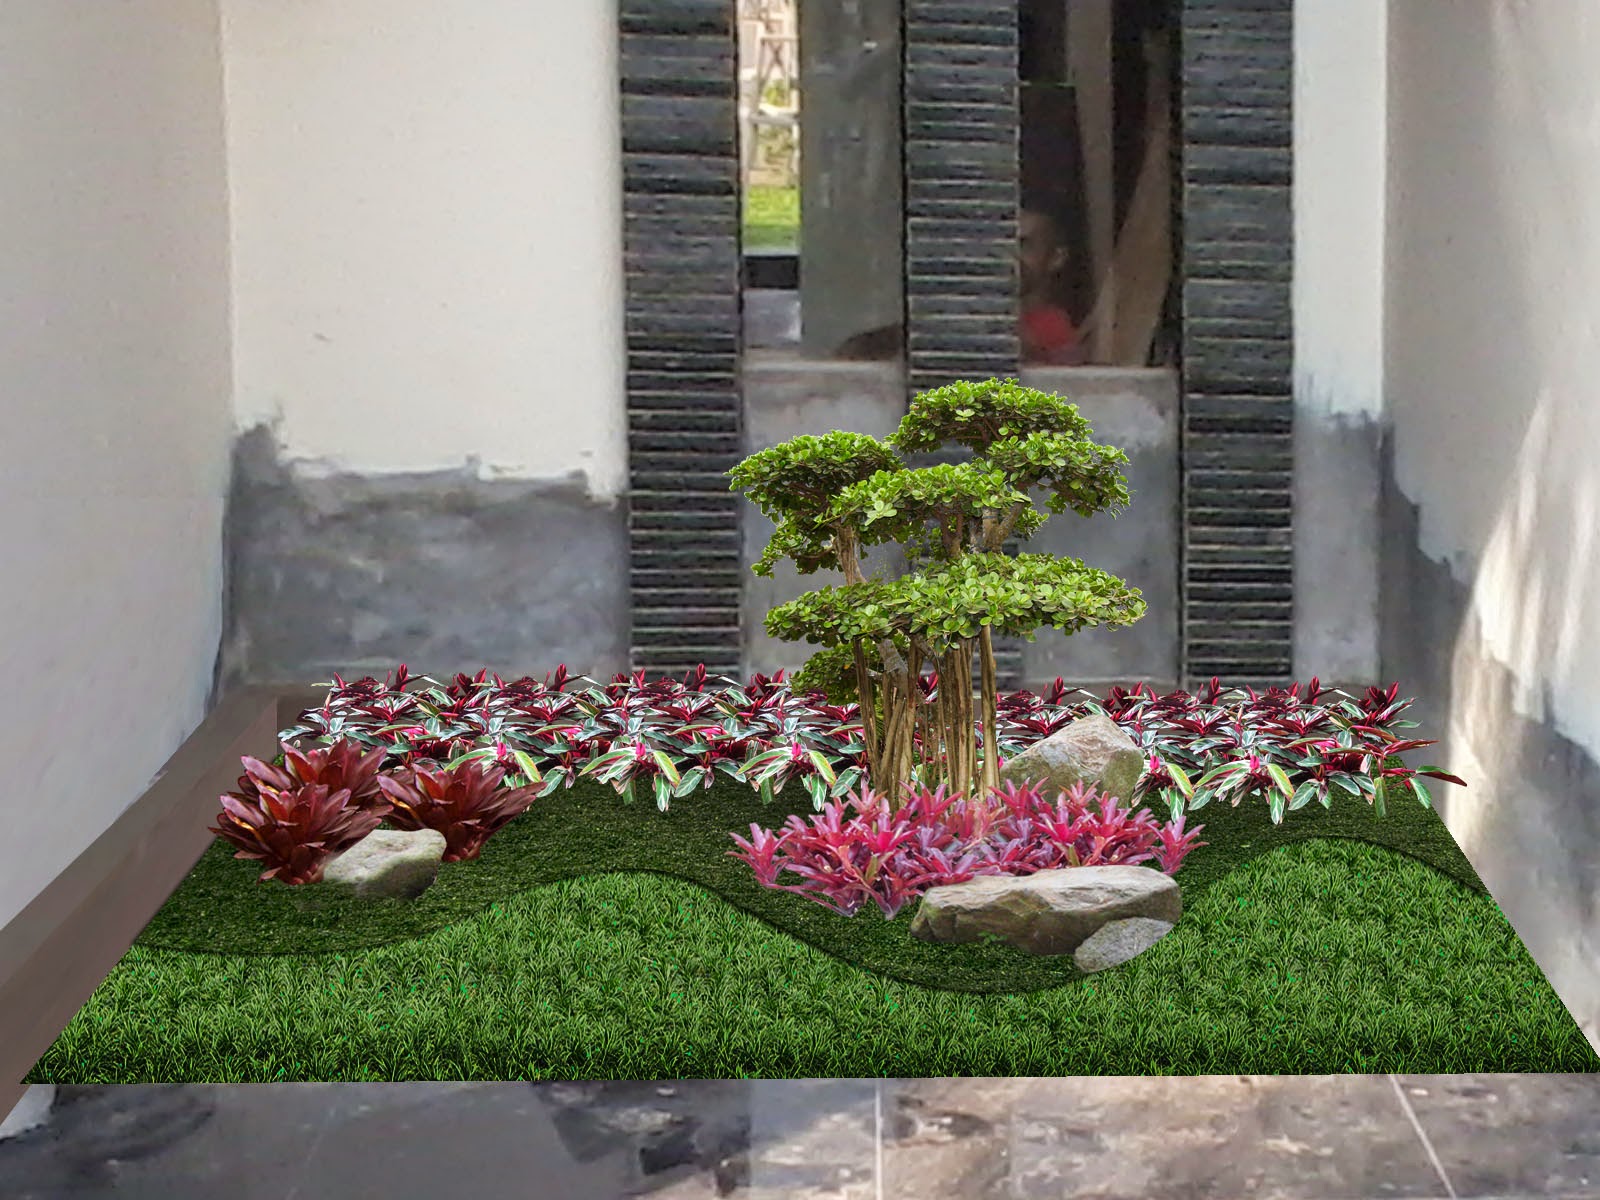 99 Contoh Gambar Model Taman Minimalis Indoor Terlengkap Terbaru